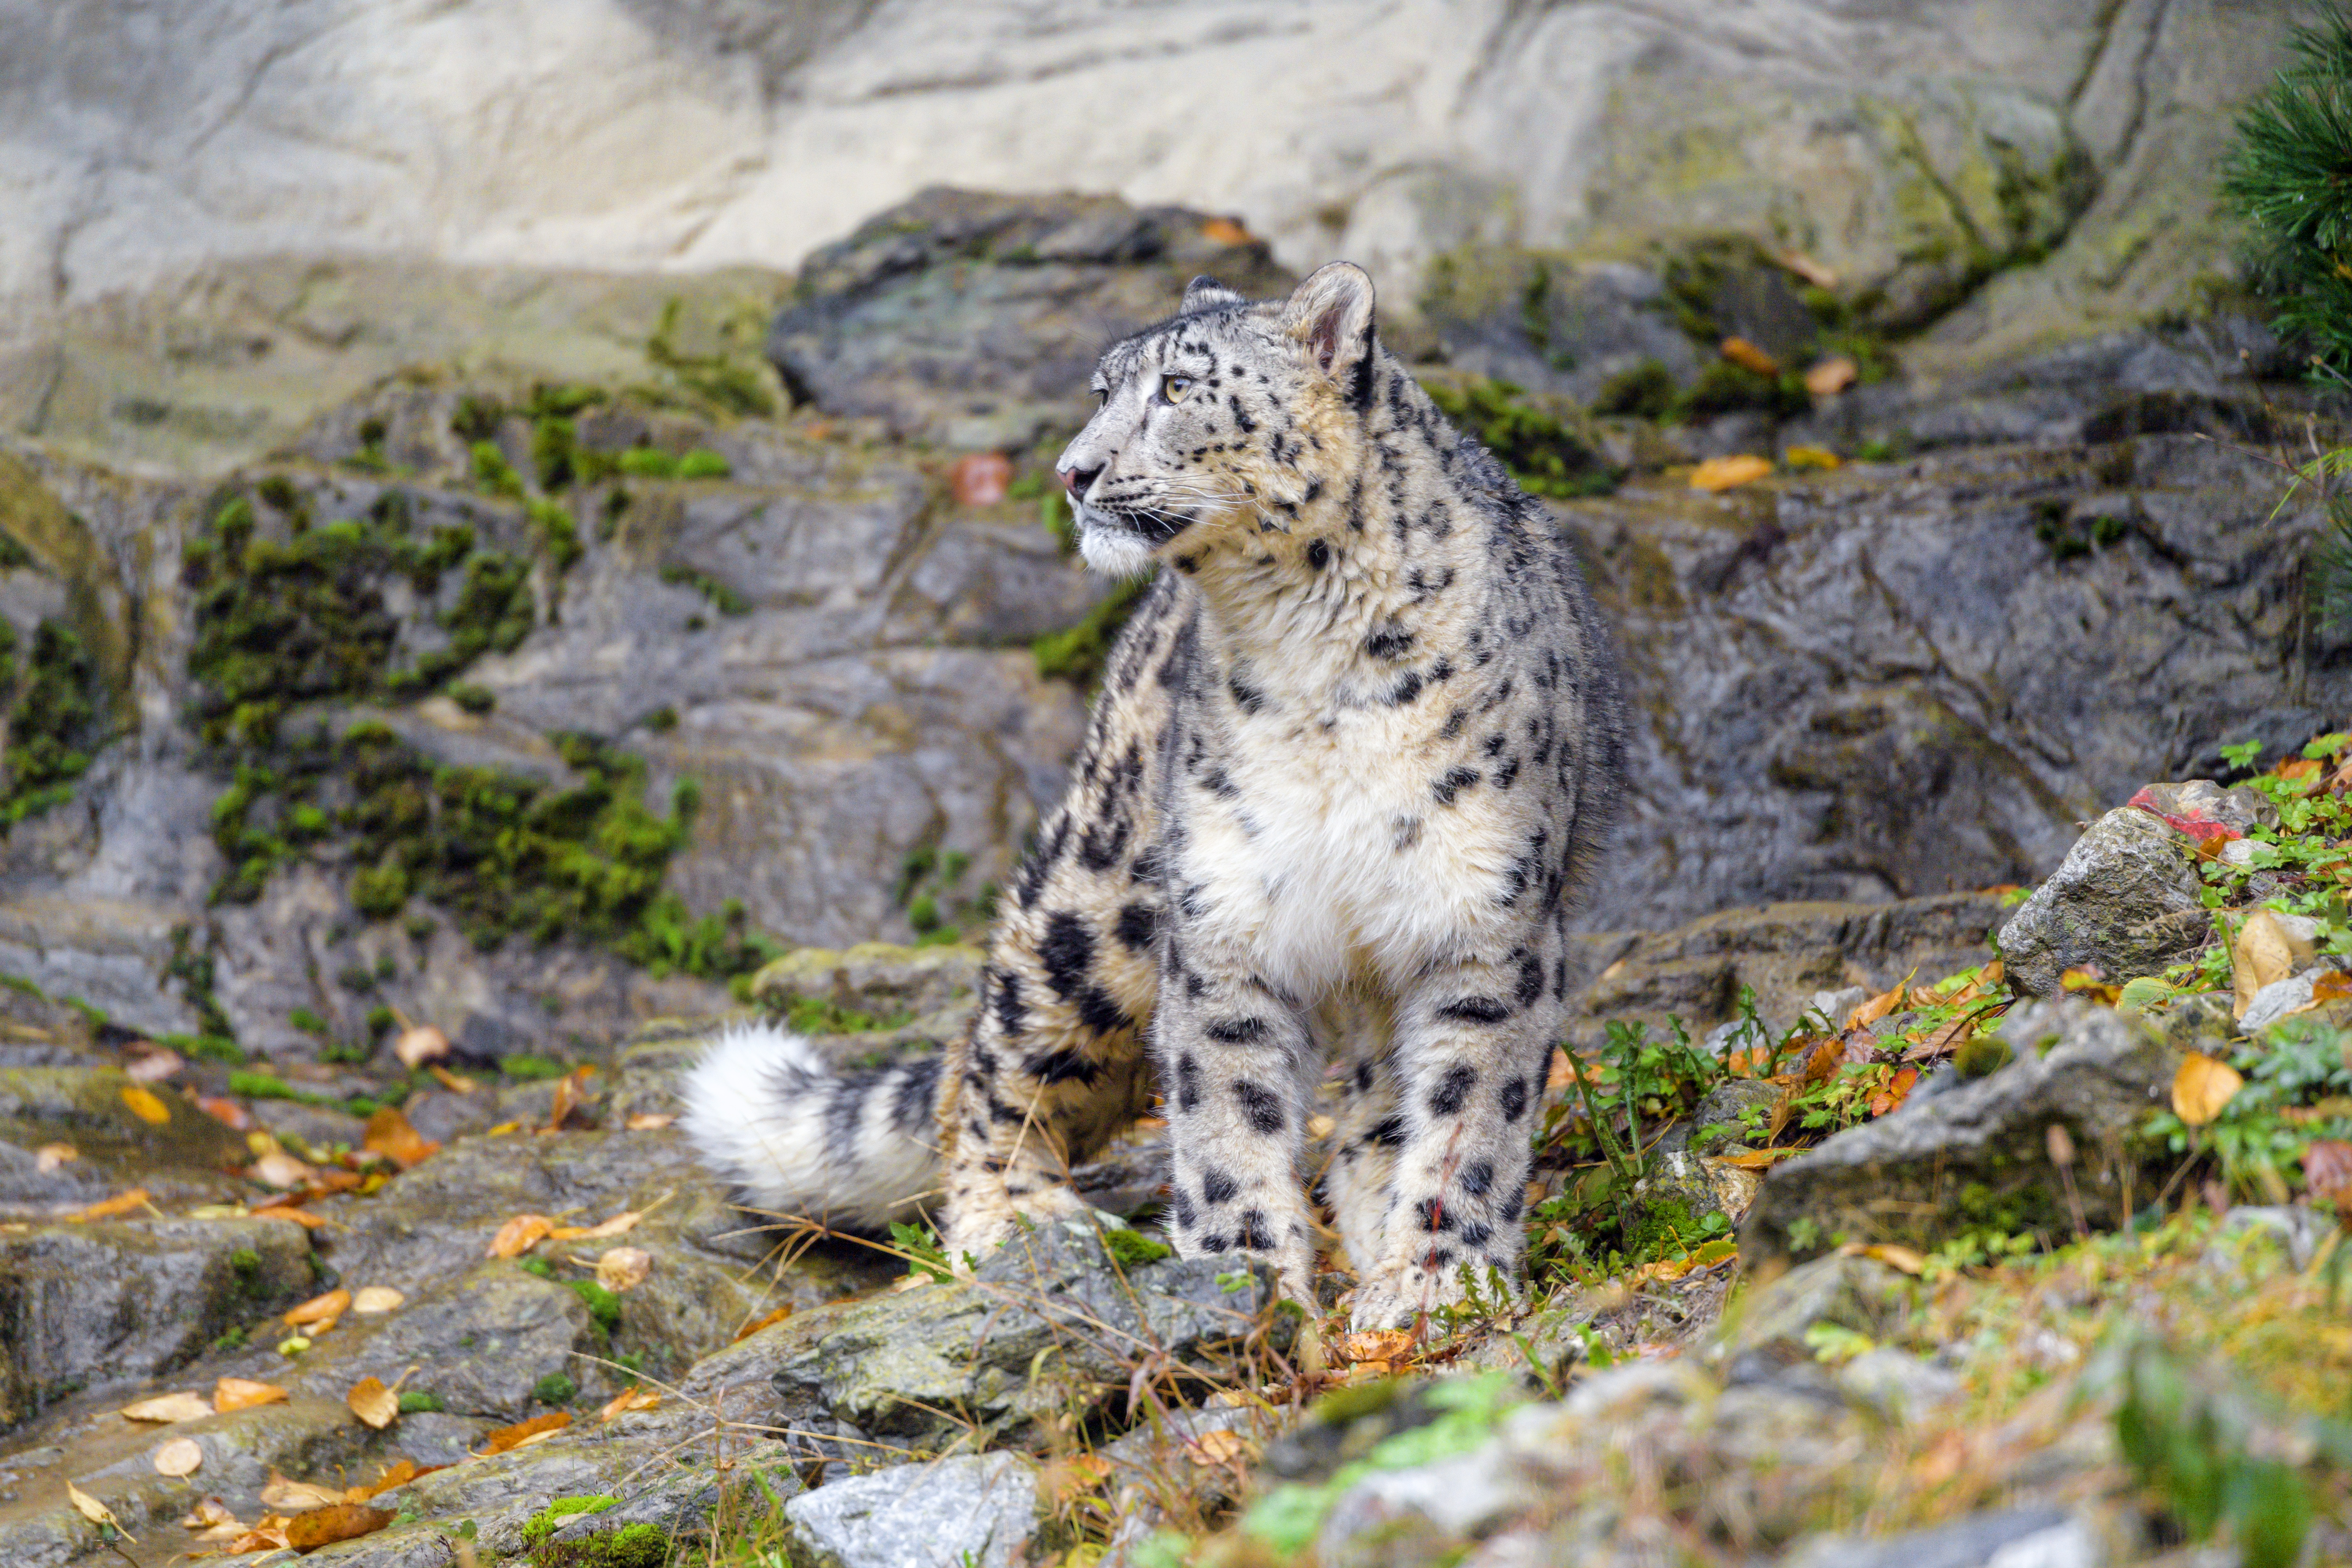 android snow leopard, animals, predator, big cat, irbis